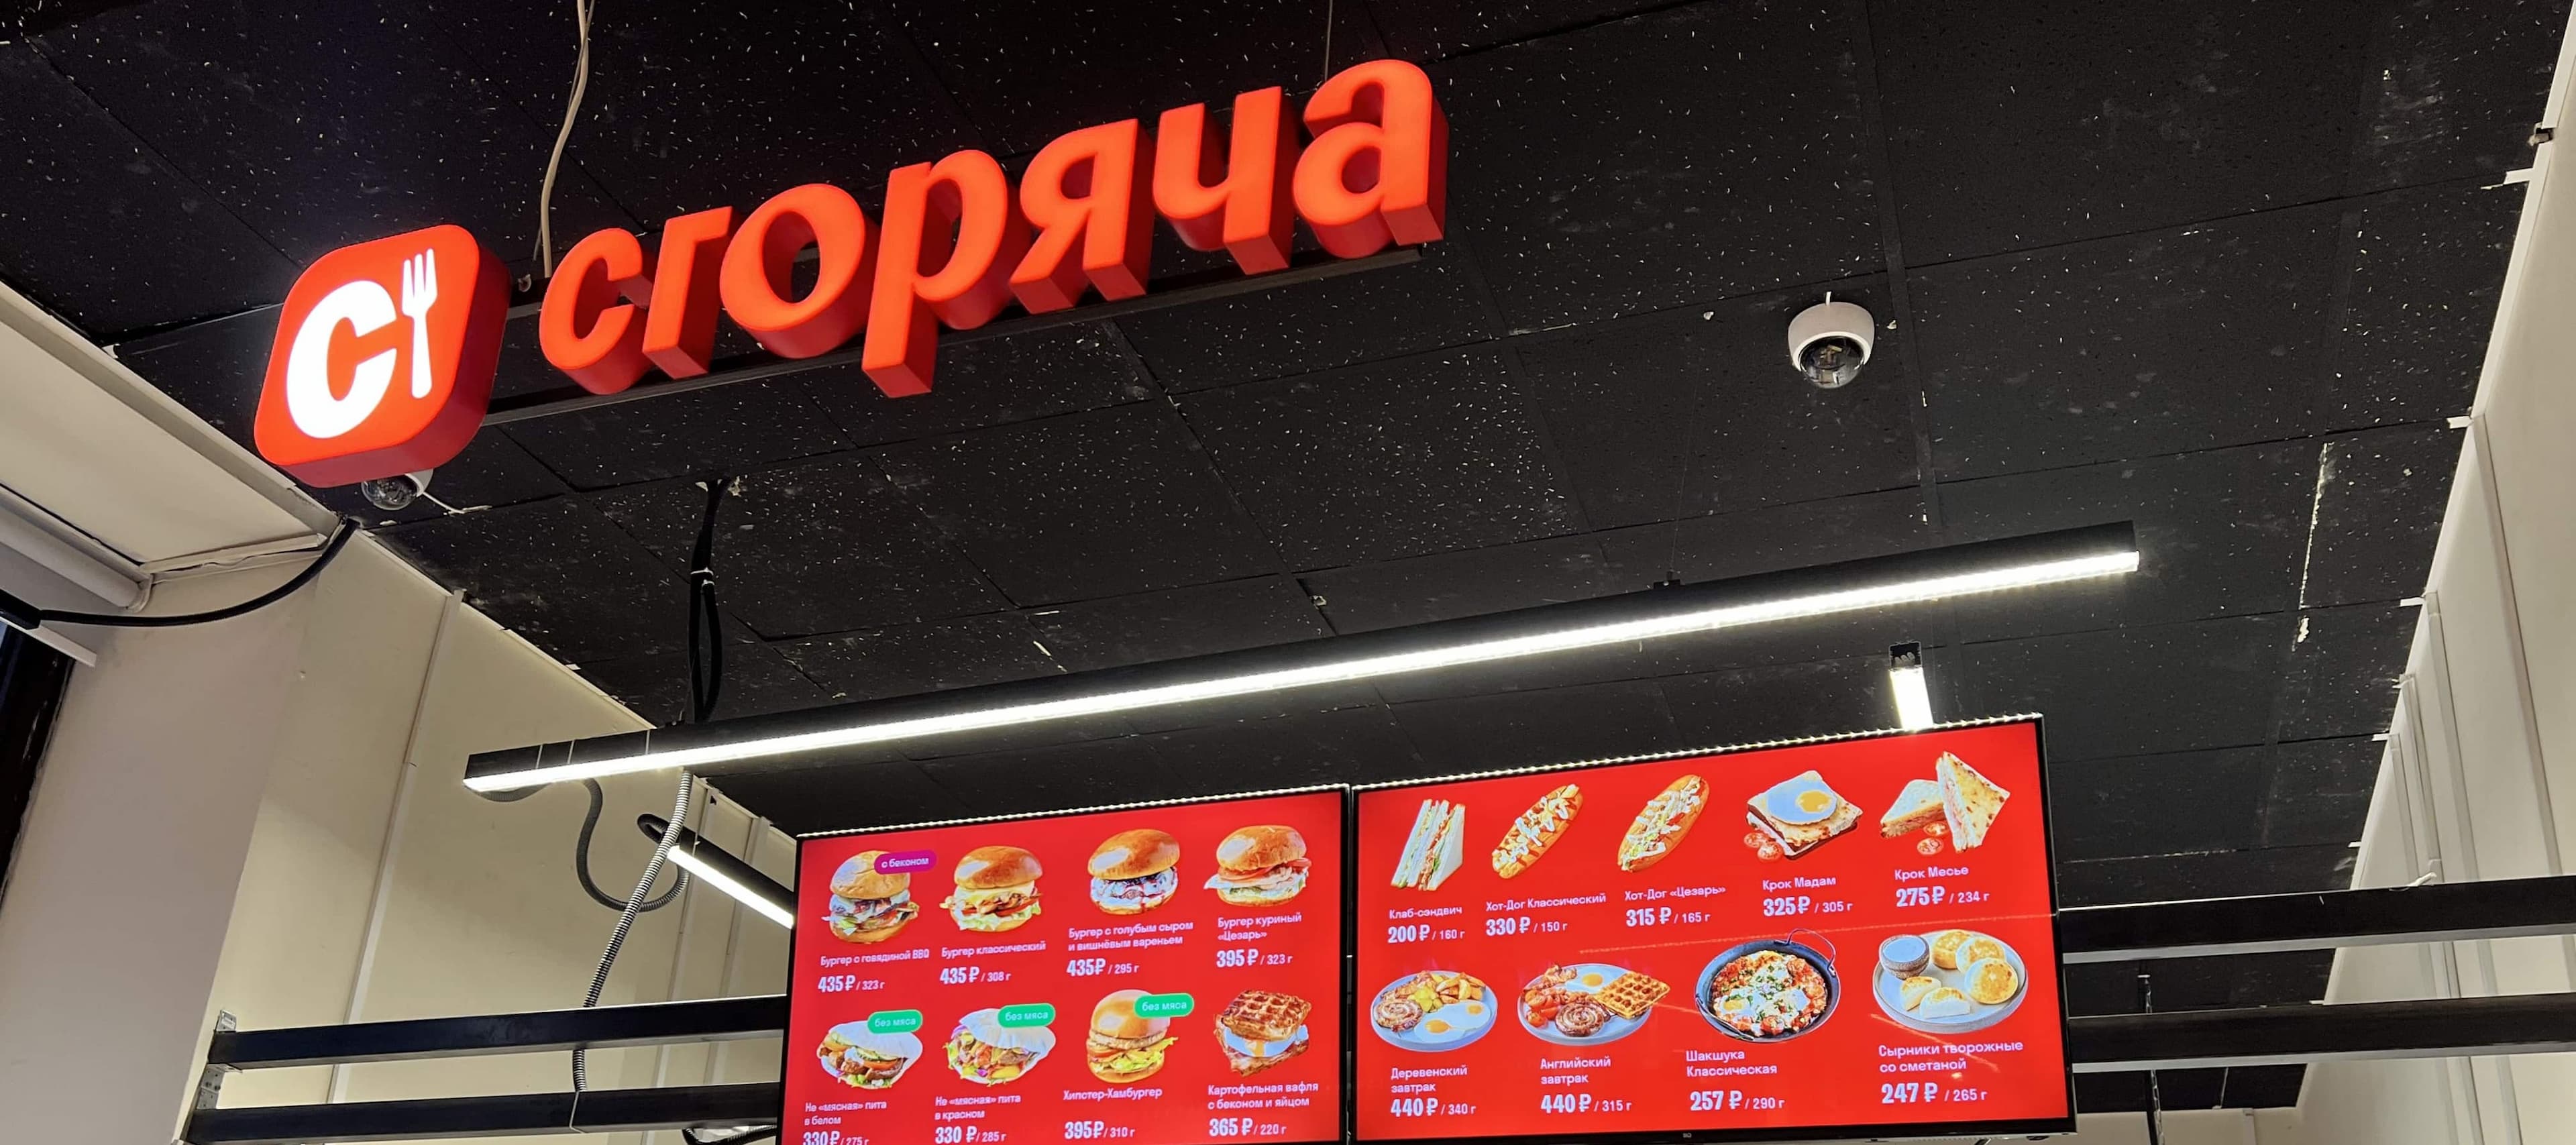 Фото новости: "«Вкусвилл» открыл кафе «Сгоряча» в Москве и Санкт-Петербурге"